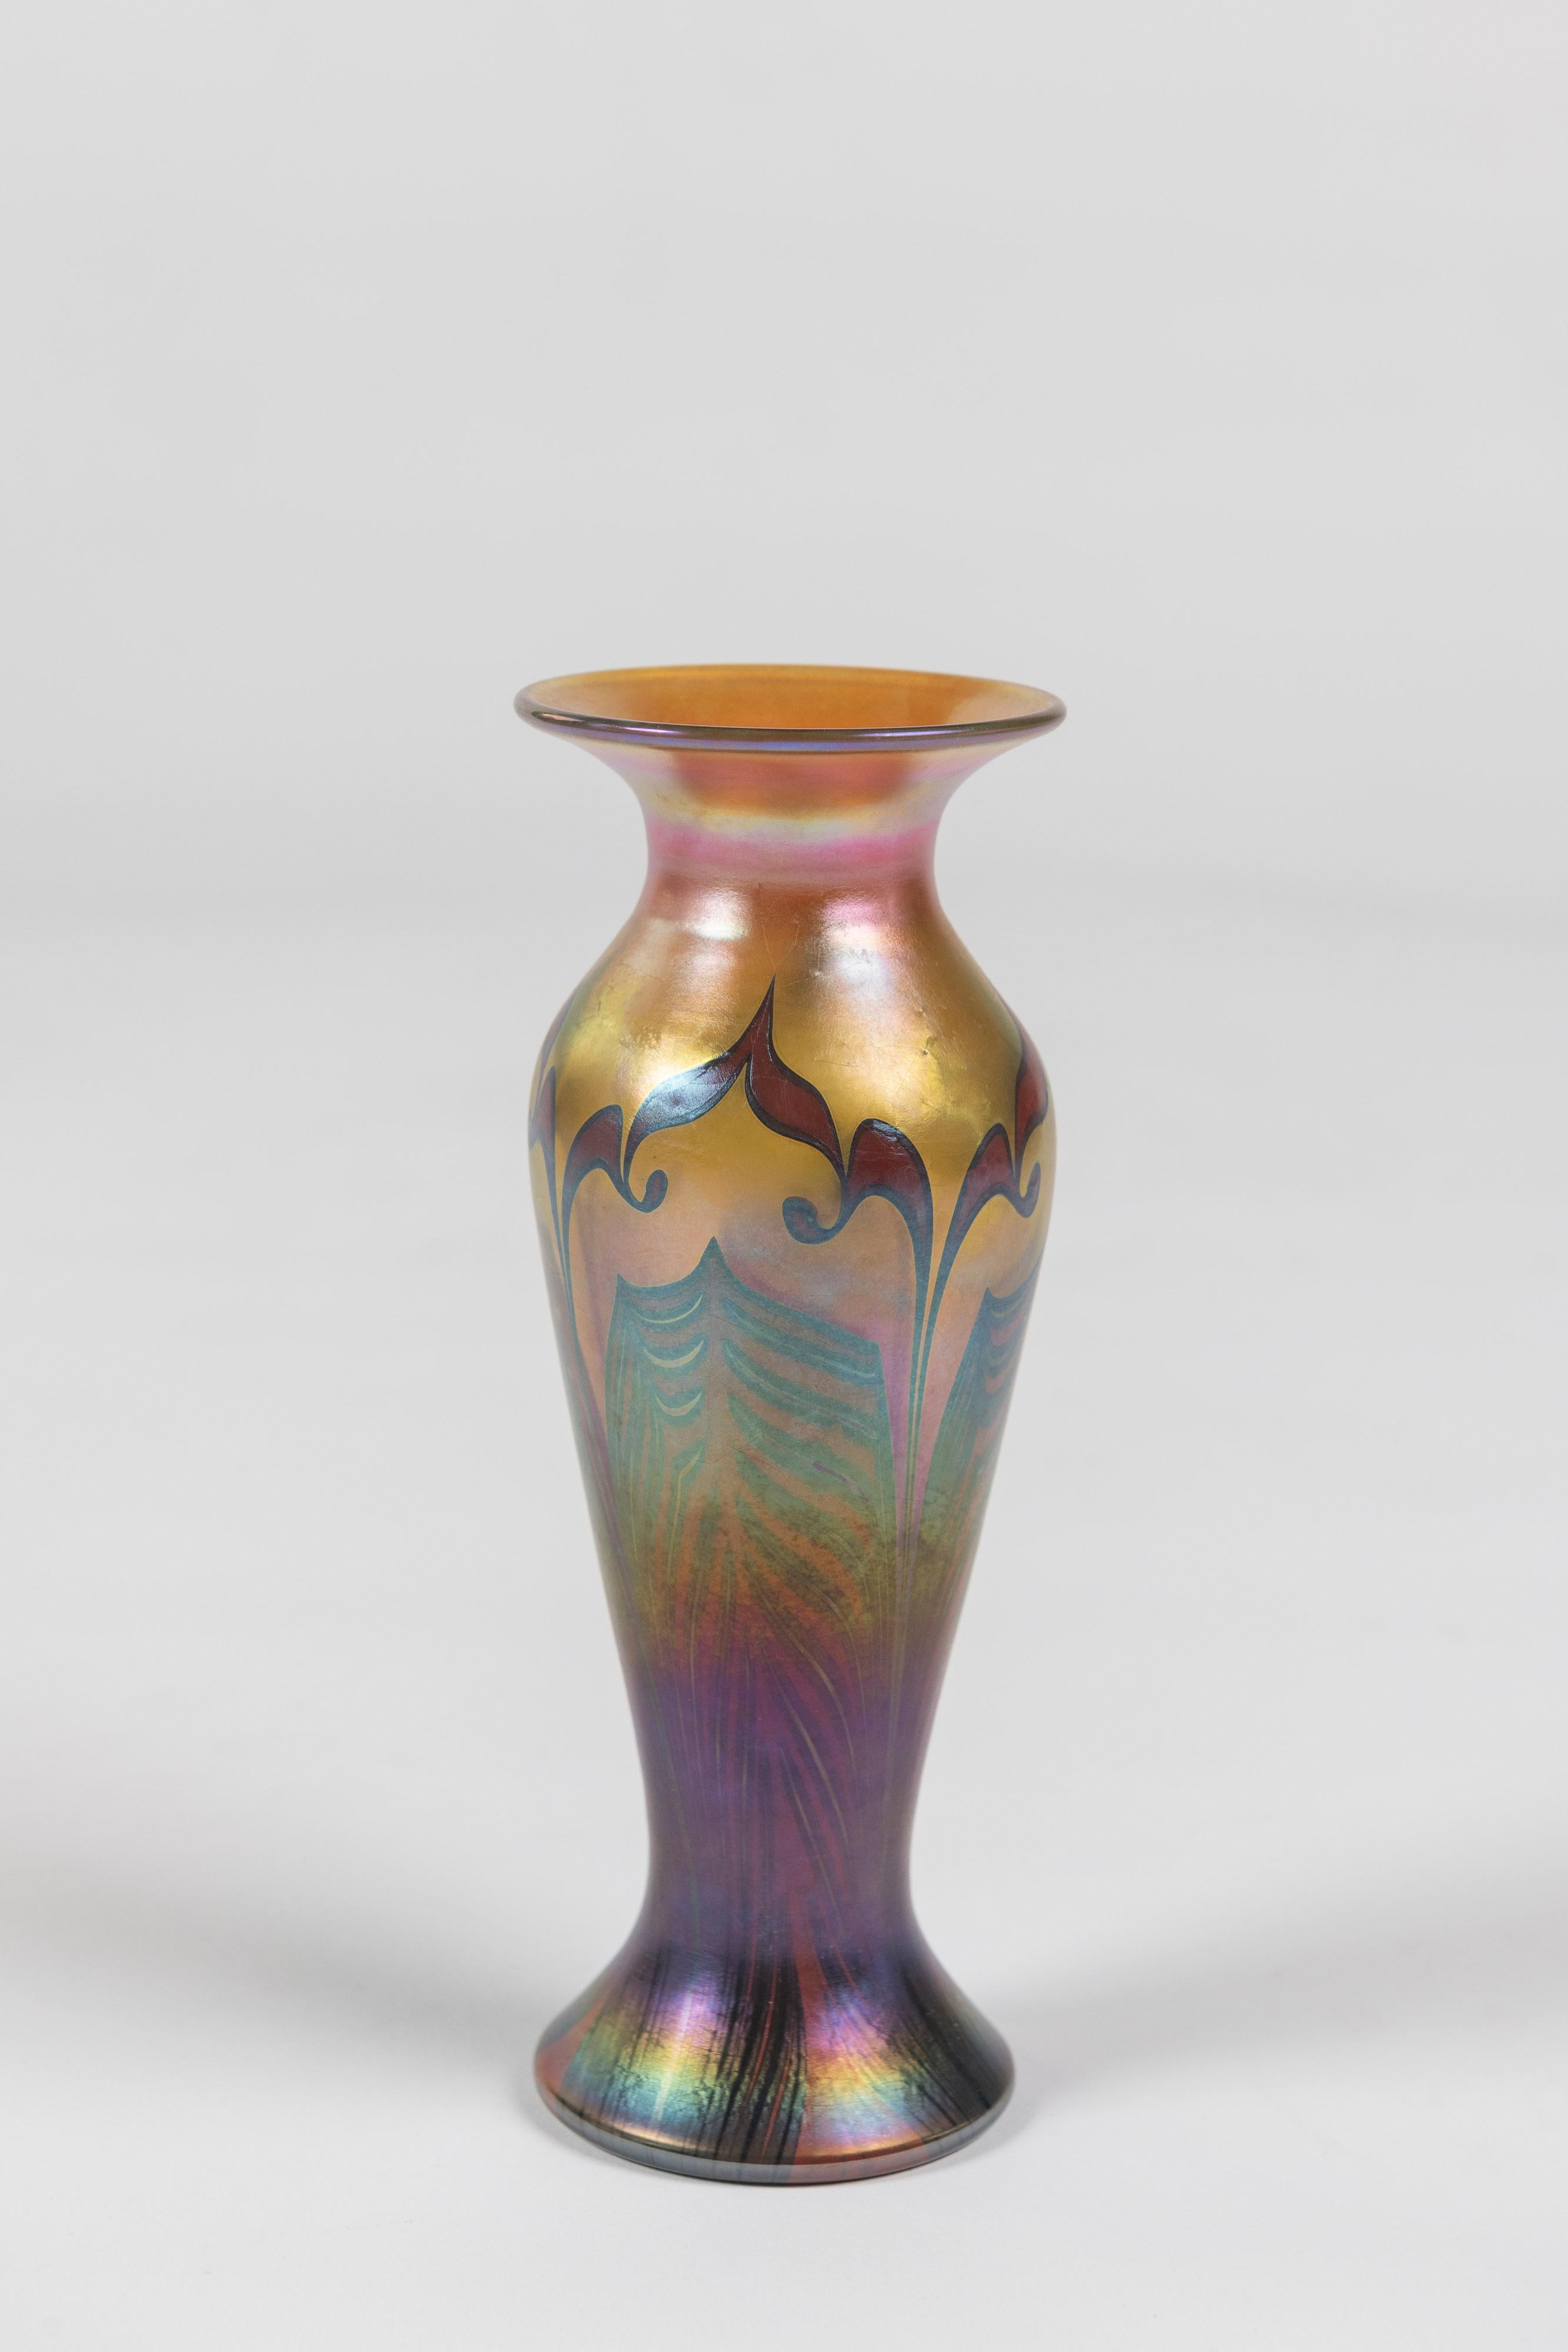 Vase en verre d'art classique populaire à plumes tirées, fabriqué par les Studios Lundberg de Californie, signé. Finition irisée et inspirée des motifs Tiffany. 